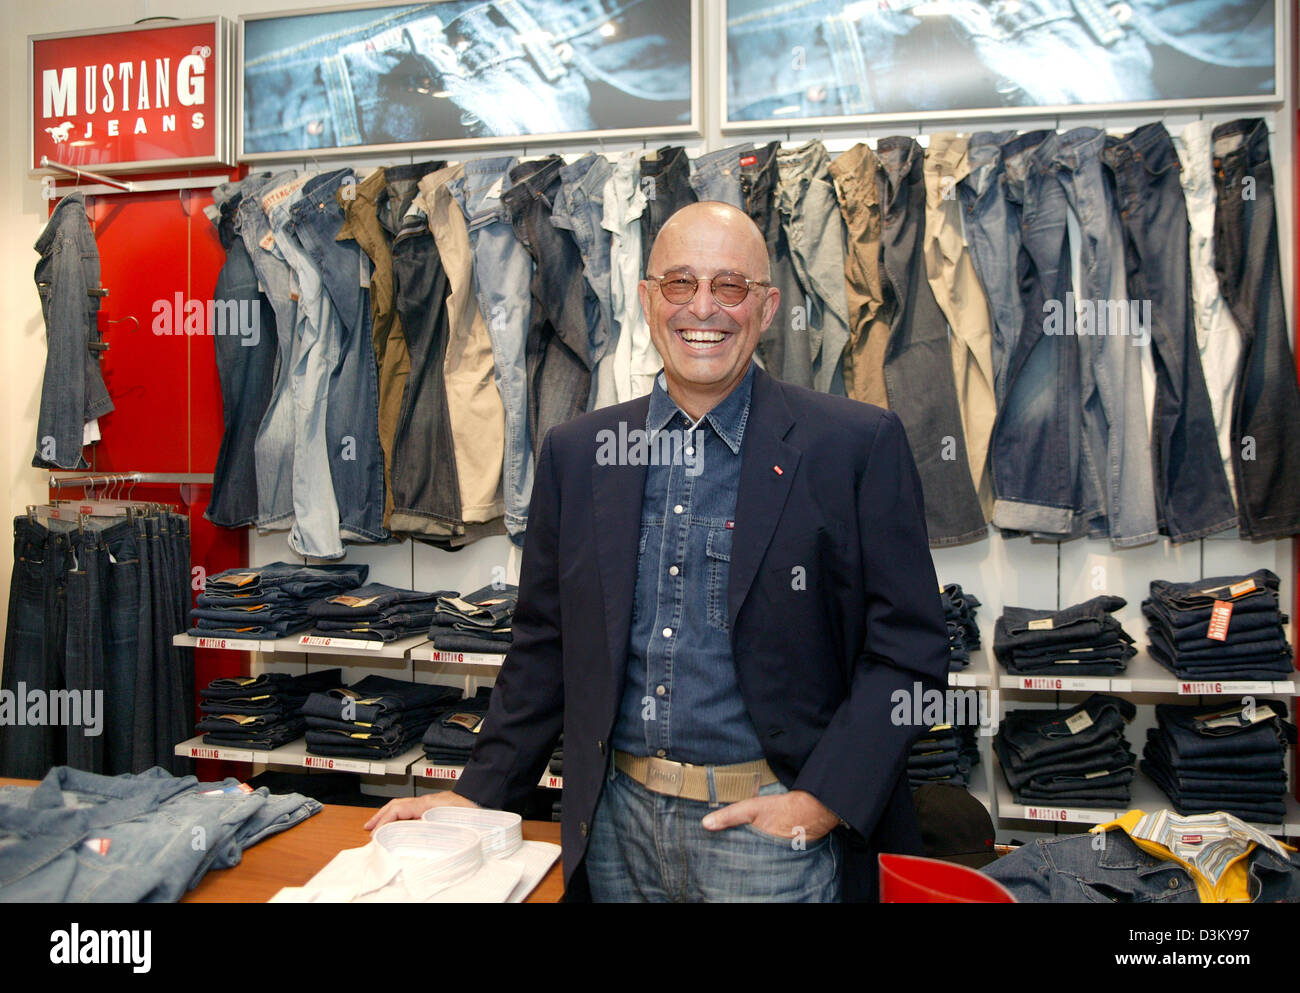 (Dpa) - Heiner Sefranek, PDG de vêtements détaillant Mustang, se dresse entre les étagères smiling avec les vêtements de la marque Mustang au siège social à Kuenzelsau, Allemagne, 06 avril 2005. Photo : Harry Melchert Banque D'Images